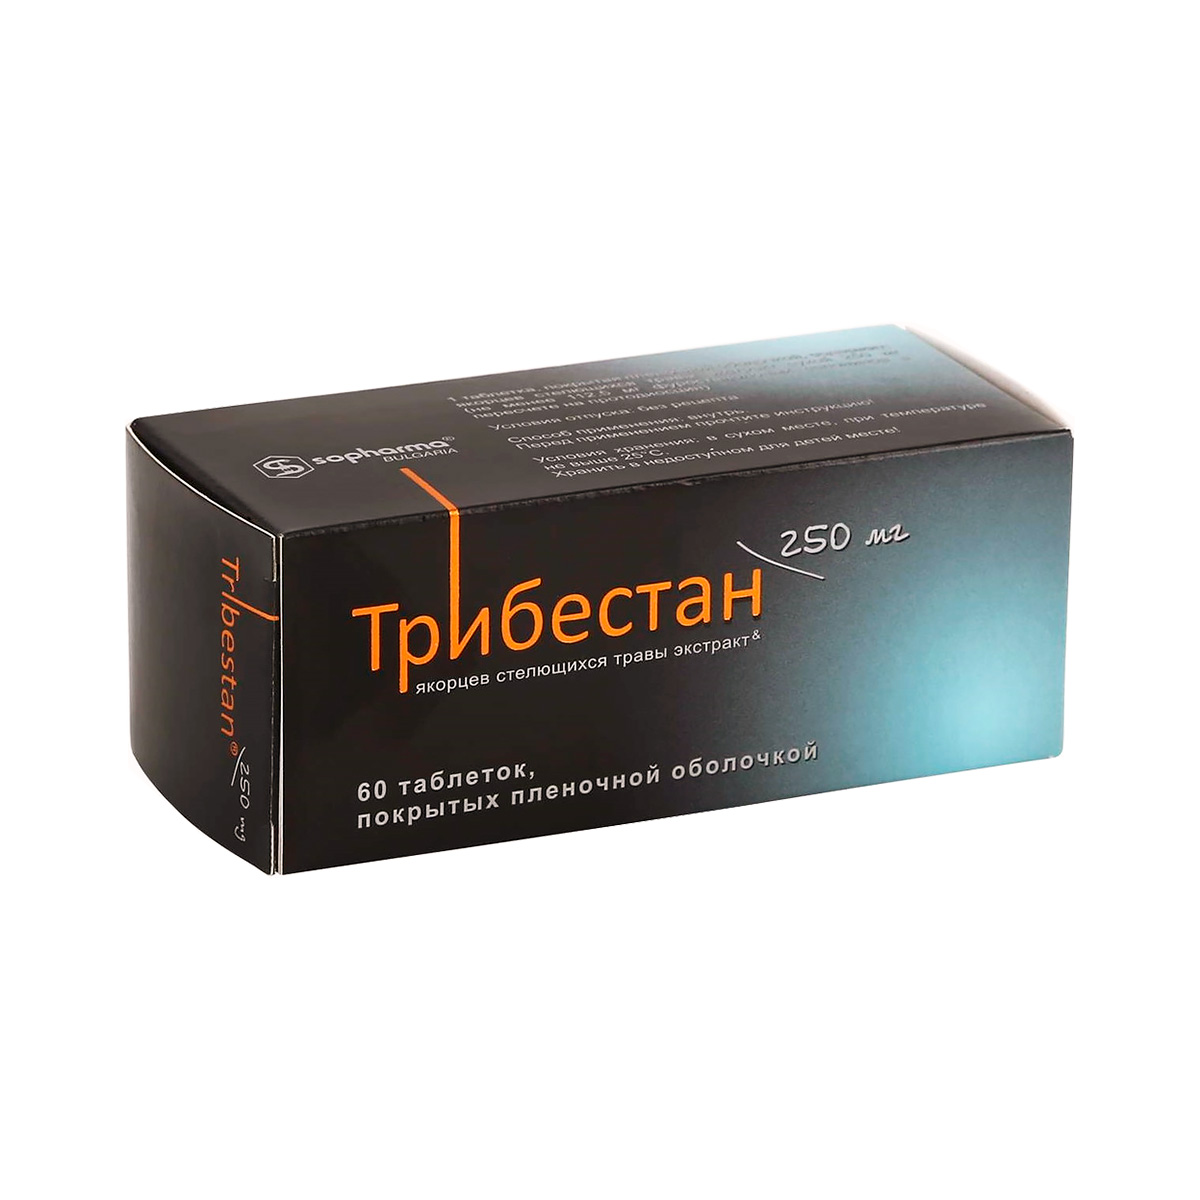 Трибестан 250 мг таблетки покрытые оболочкой 60 шт